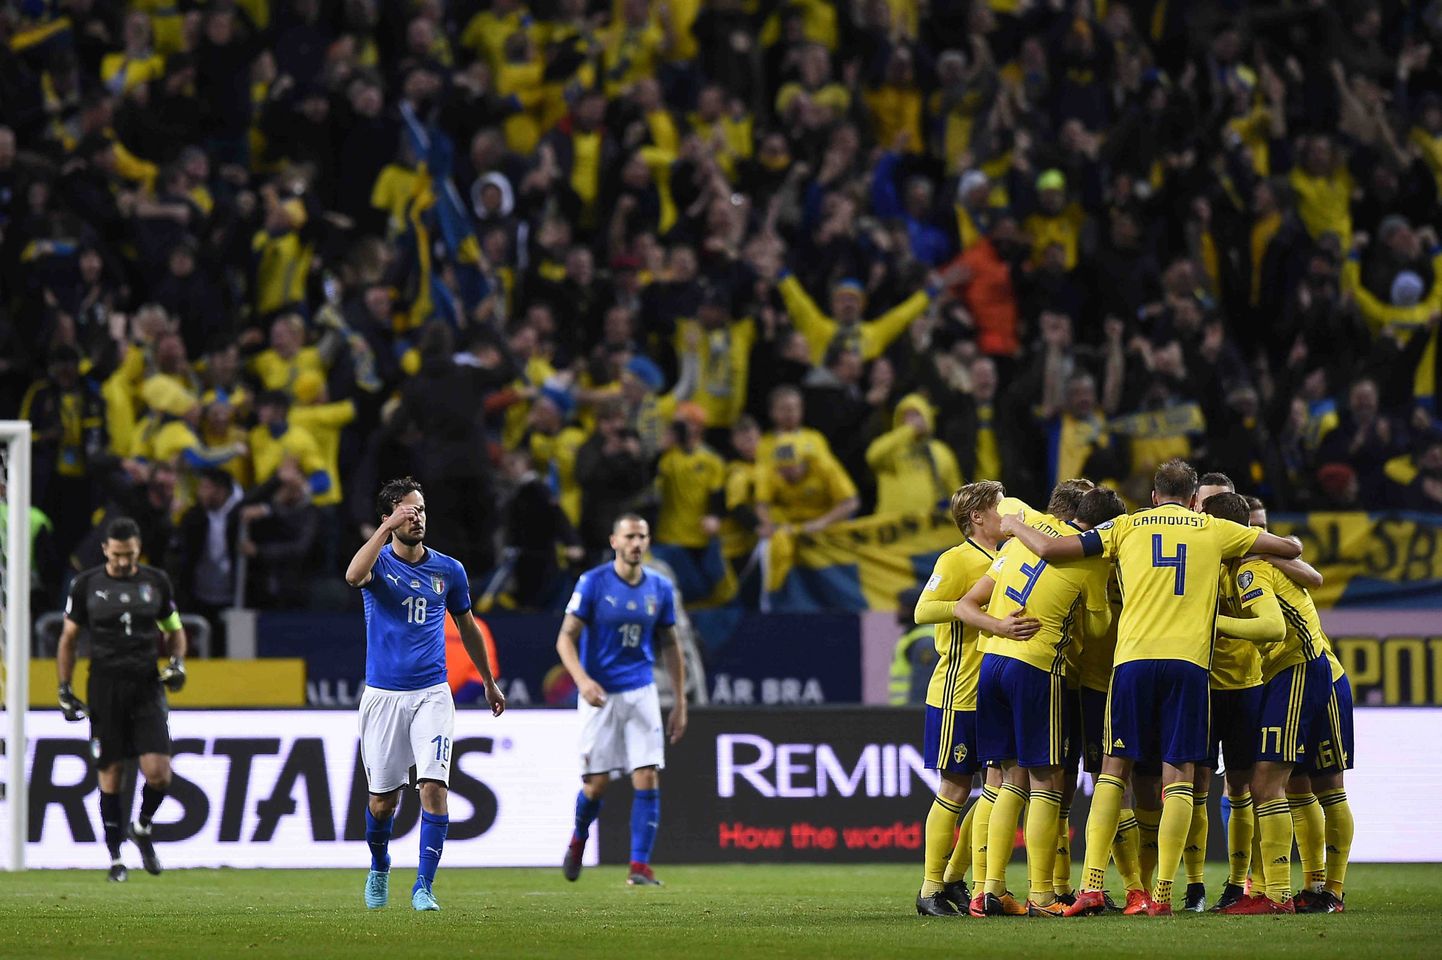 Rootsi jalgpallikoondis pääses pärast Itaalia alistamist 2018. aasta jalgpalli MMile